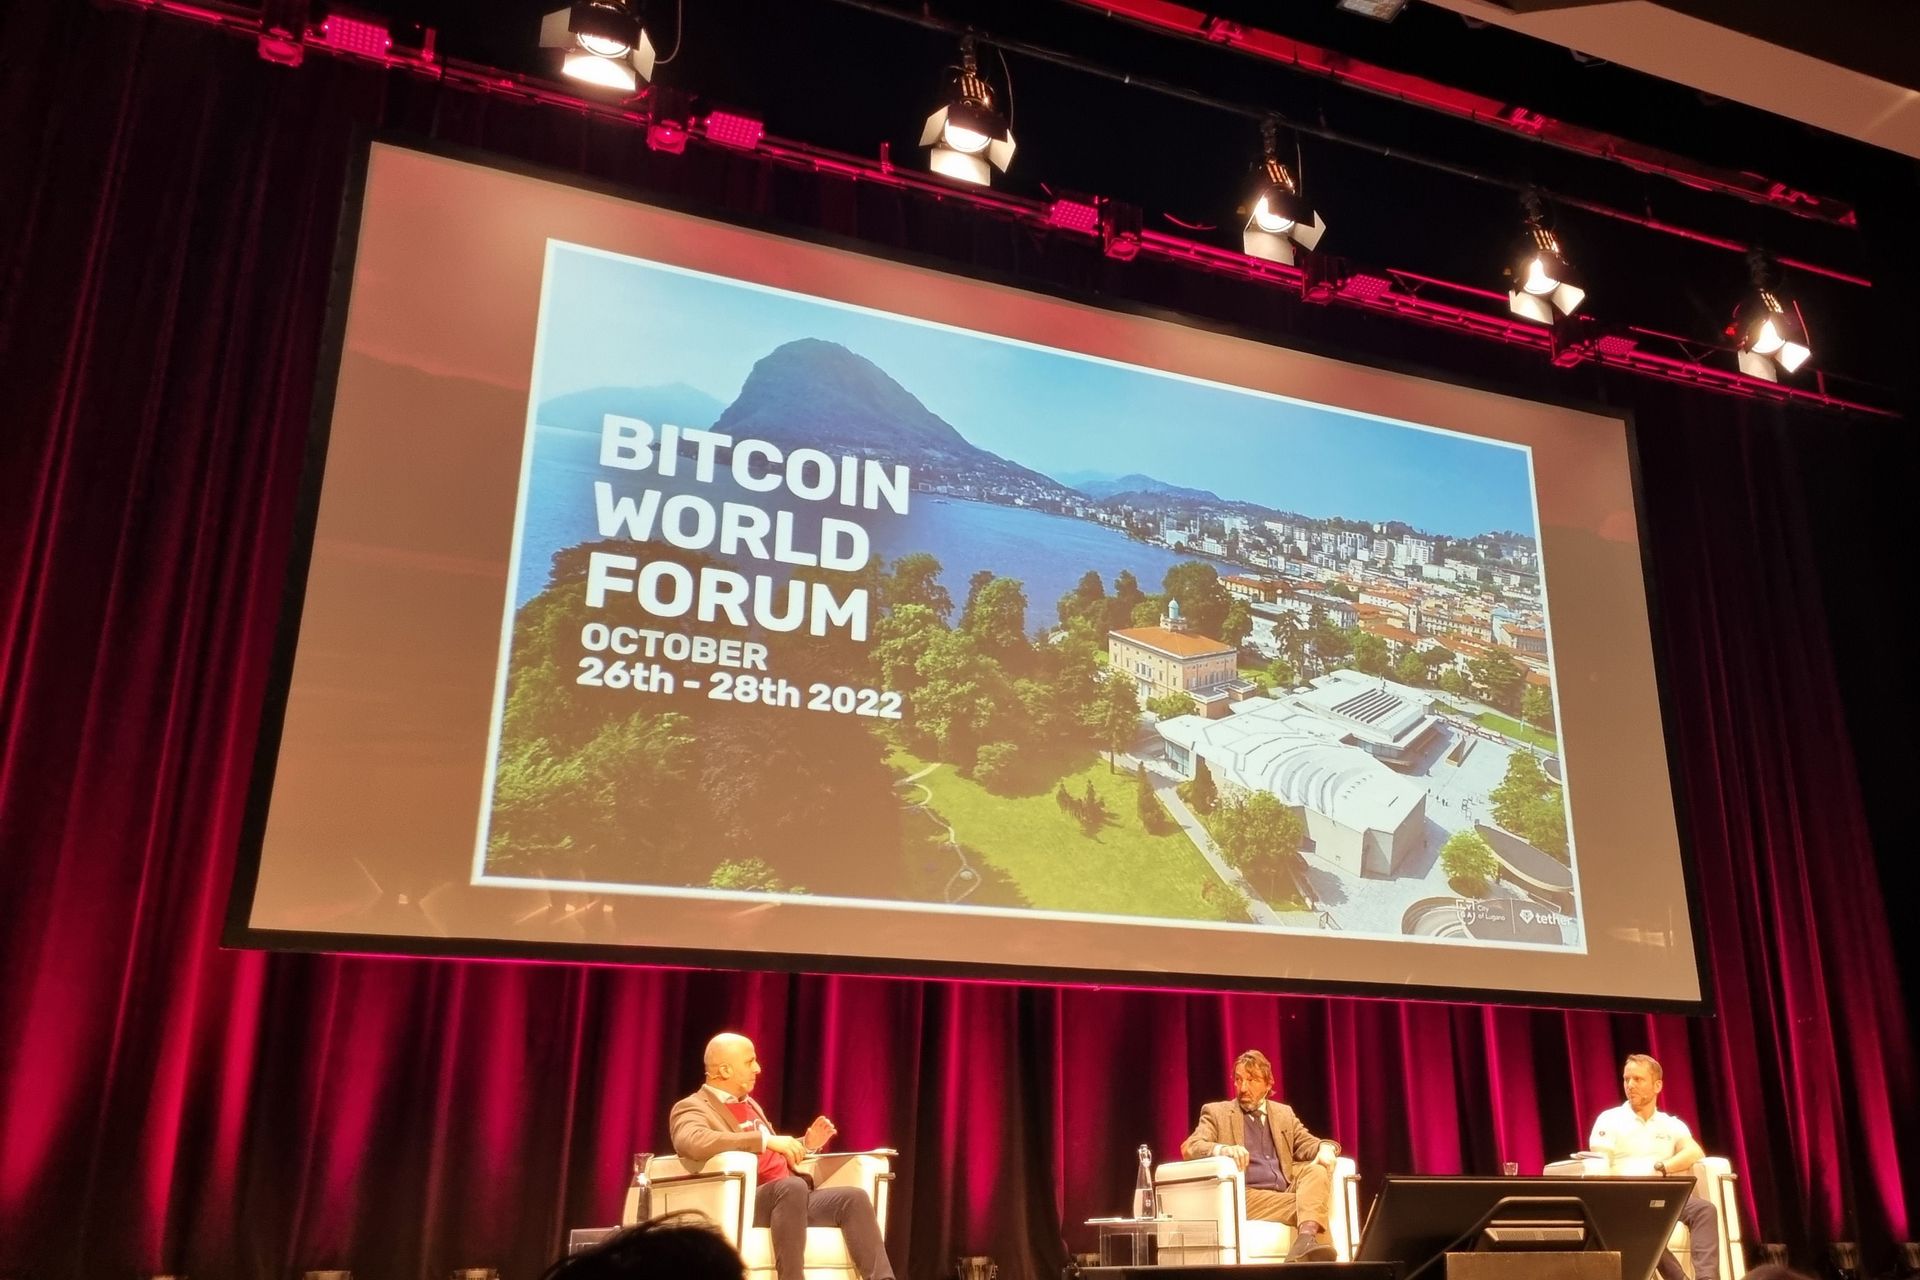 Predstavljanje "Bitcoin World Foruma", koji će se održati u Luganu u kantonu Ticino od 26. do 28. listopada 2022.